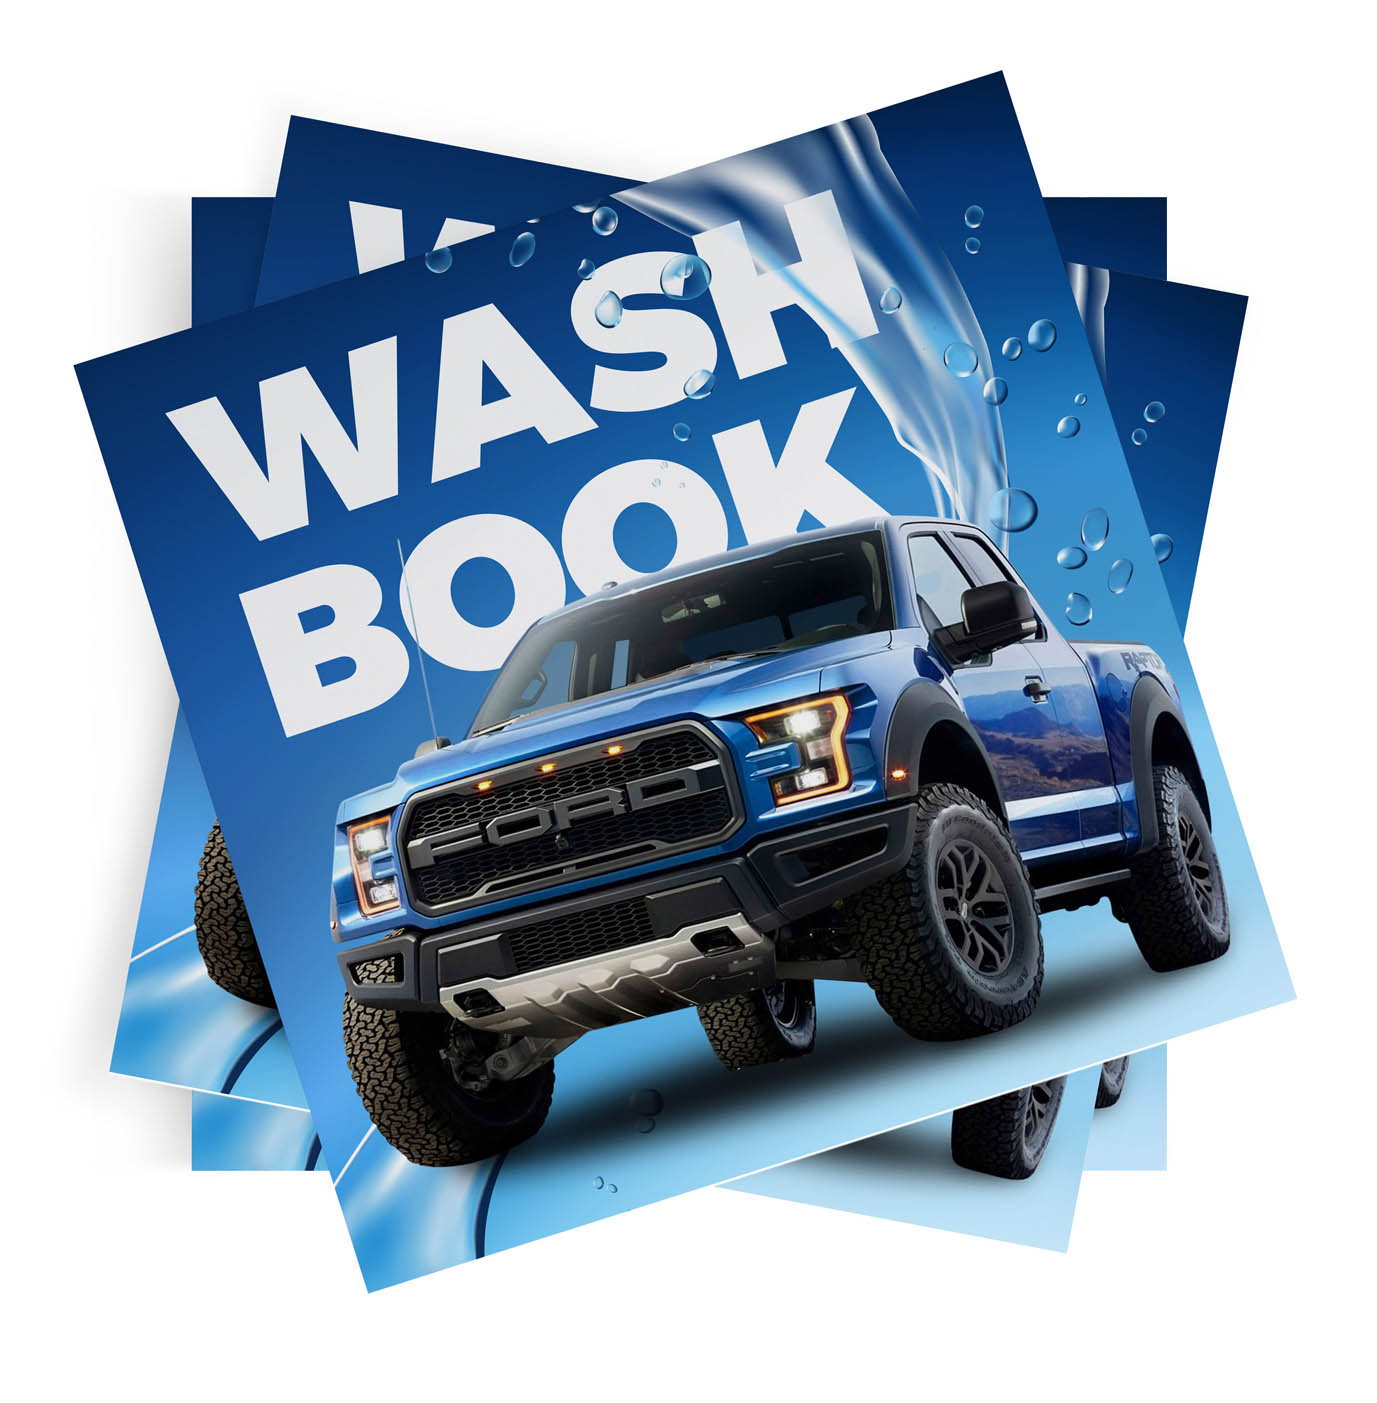 Wash book